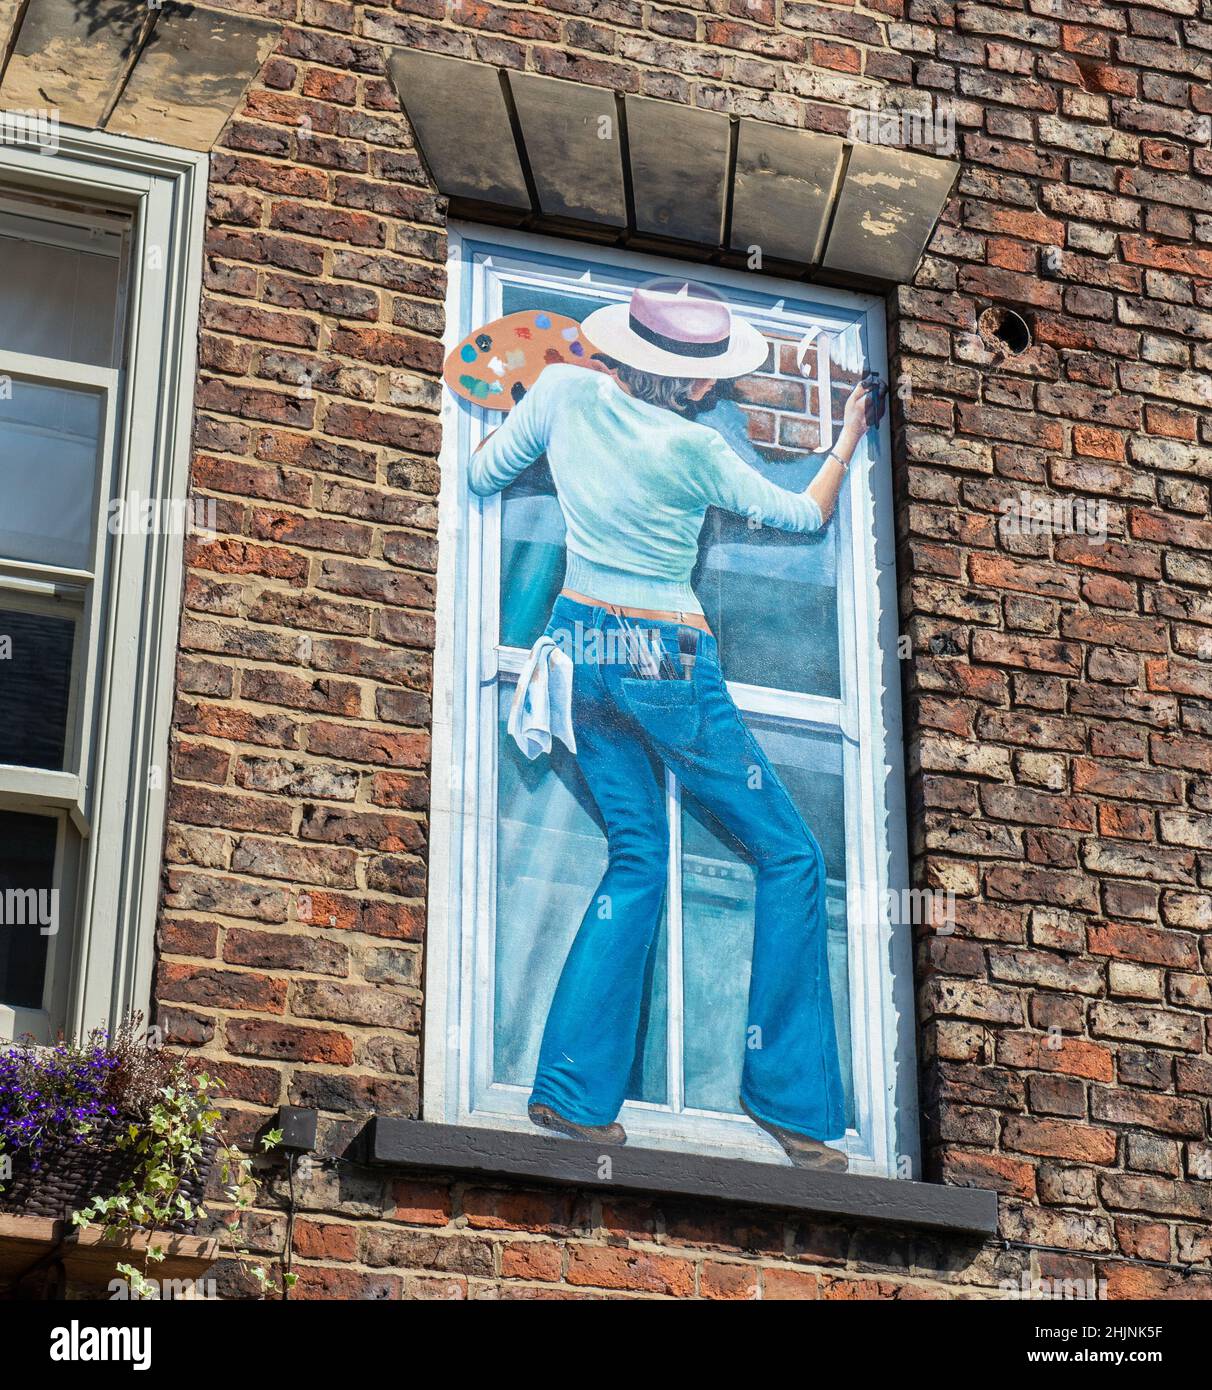 Autoportrait de l'artiste - partie du projet mural de la ville Windows trompe-l'oeil à Knaresborough, dans le Yorkshire du Nord Banque D'Images